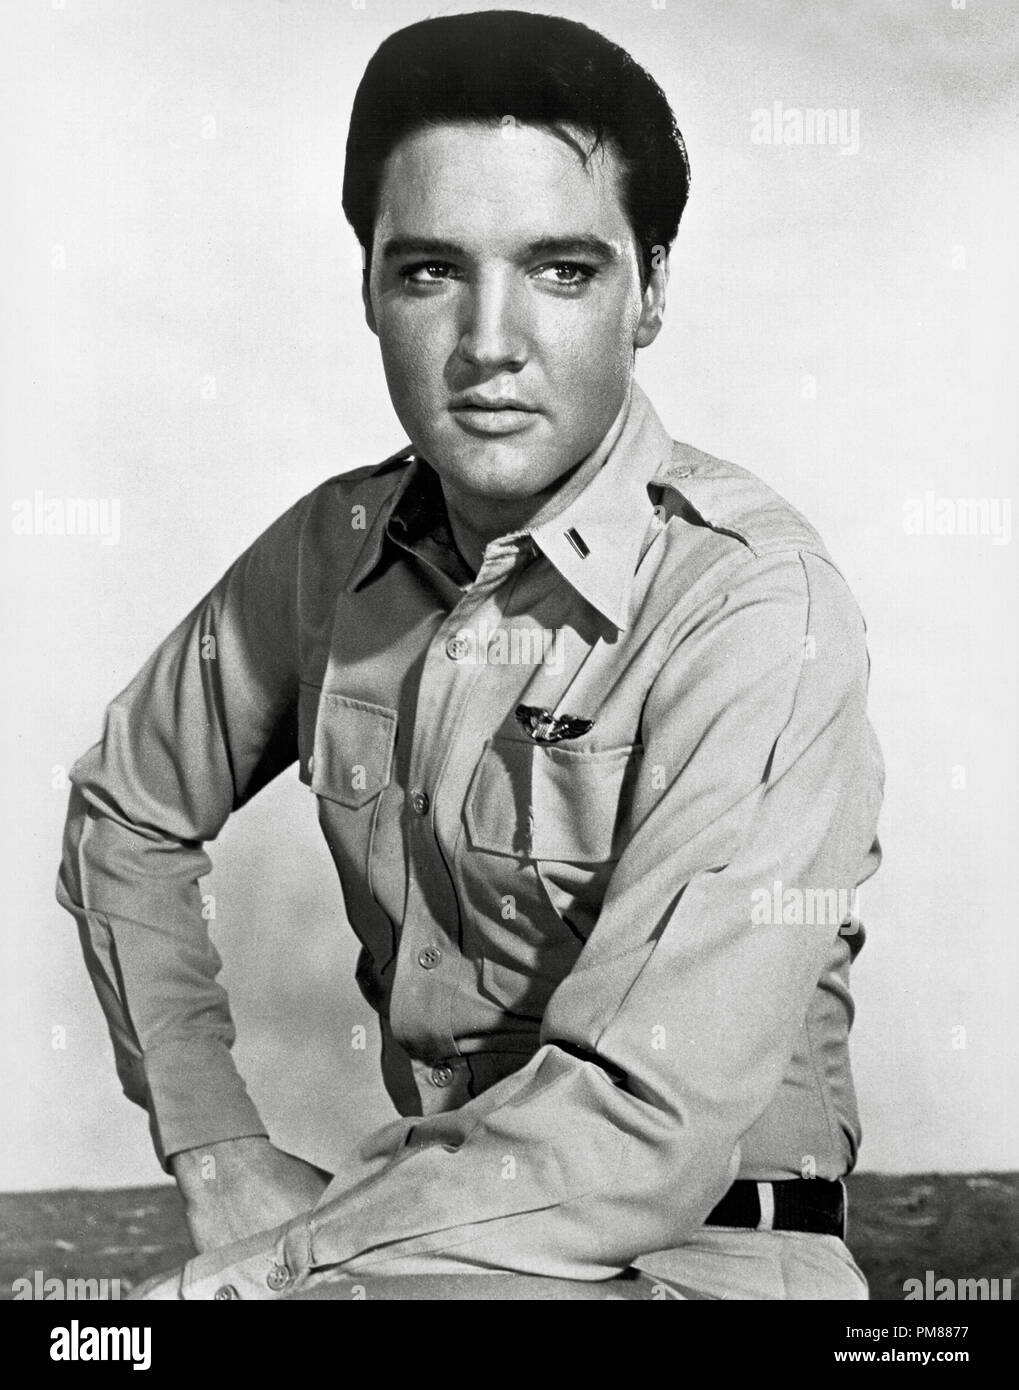 (Archivage classique du cinéma - Rétrospective) Elvis Presley Elvis Presley, vers 1960 référence #  31616 040THA Banque D'Images